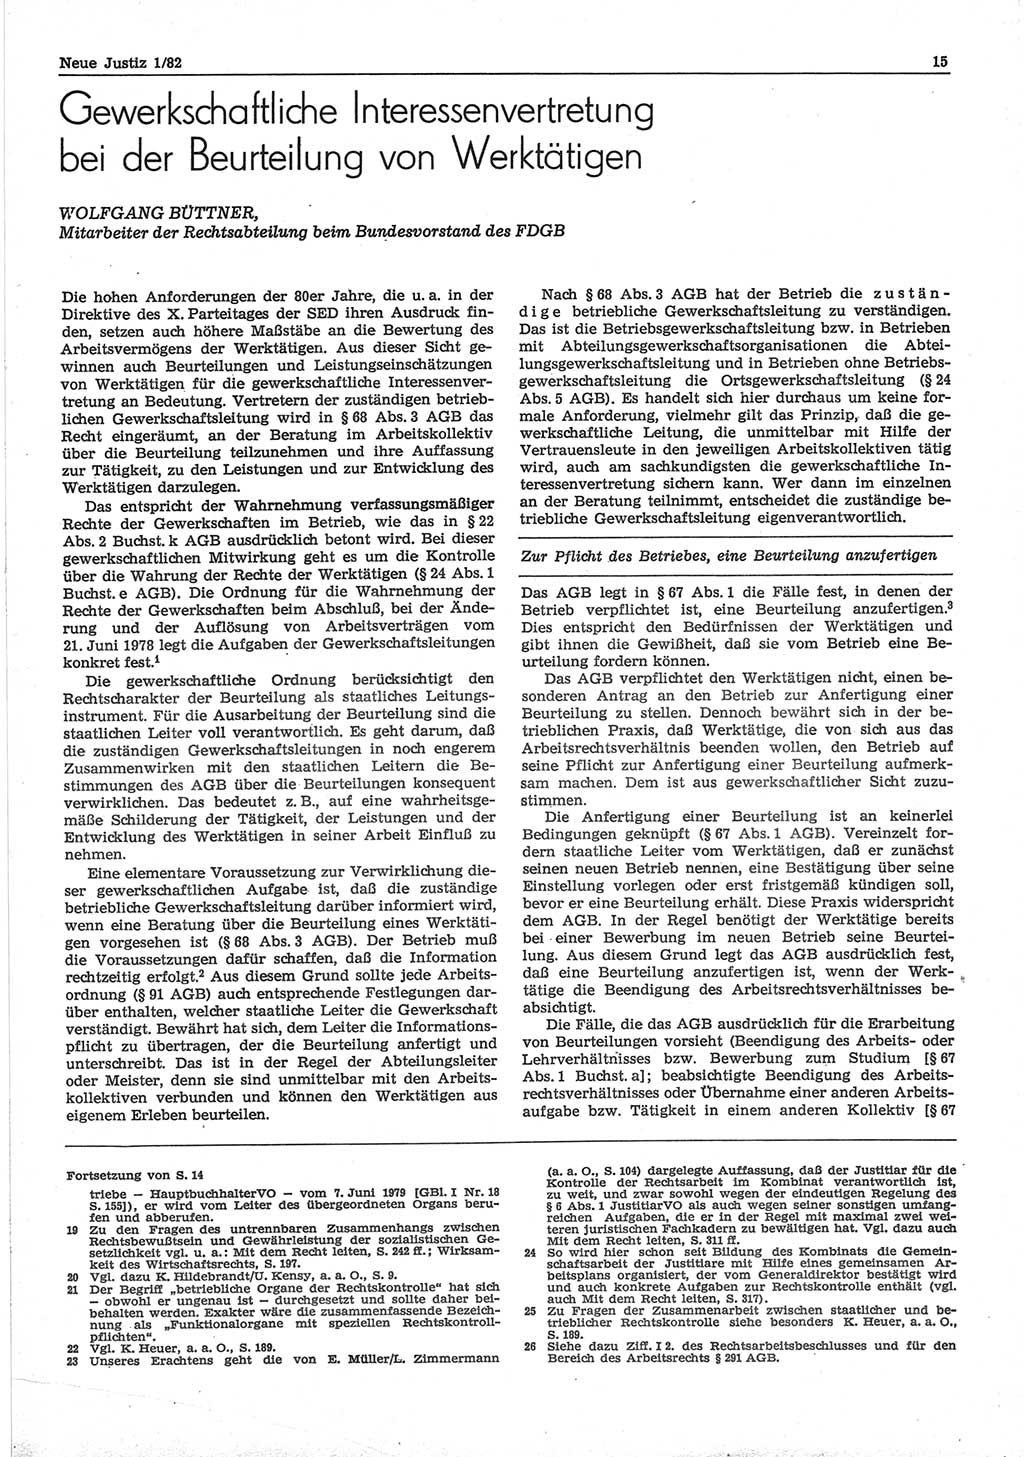 Neue Justiz (NJ), Zeitschrift für sozialistisches Recht und Gesetzlichkeit [Deutsche Demokratische Republik (DDR)], 36. Jahrgang 1982, Seite 15 (NJ DDR 1982, S. 15)